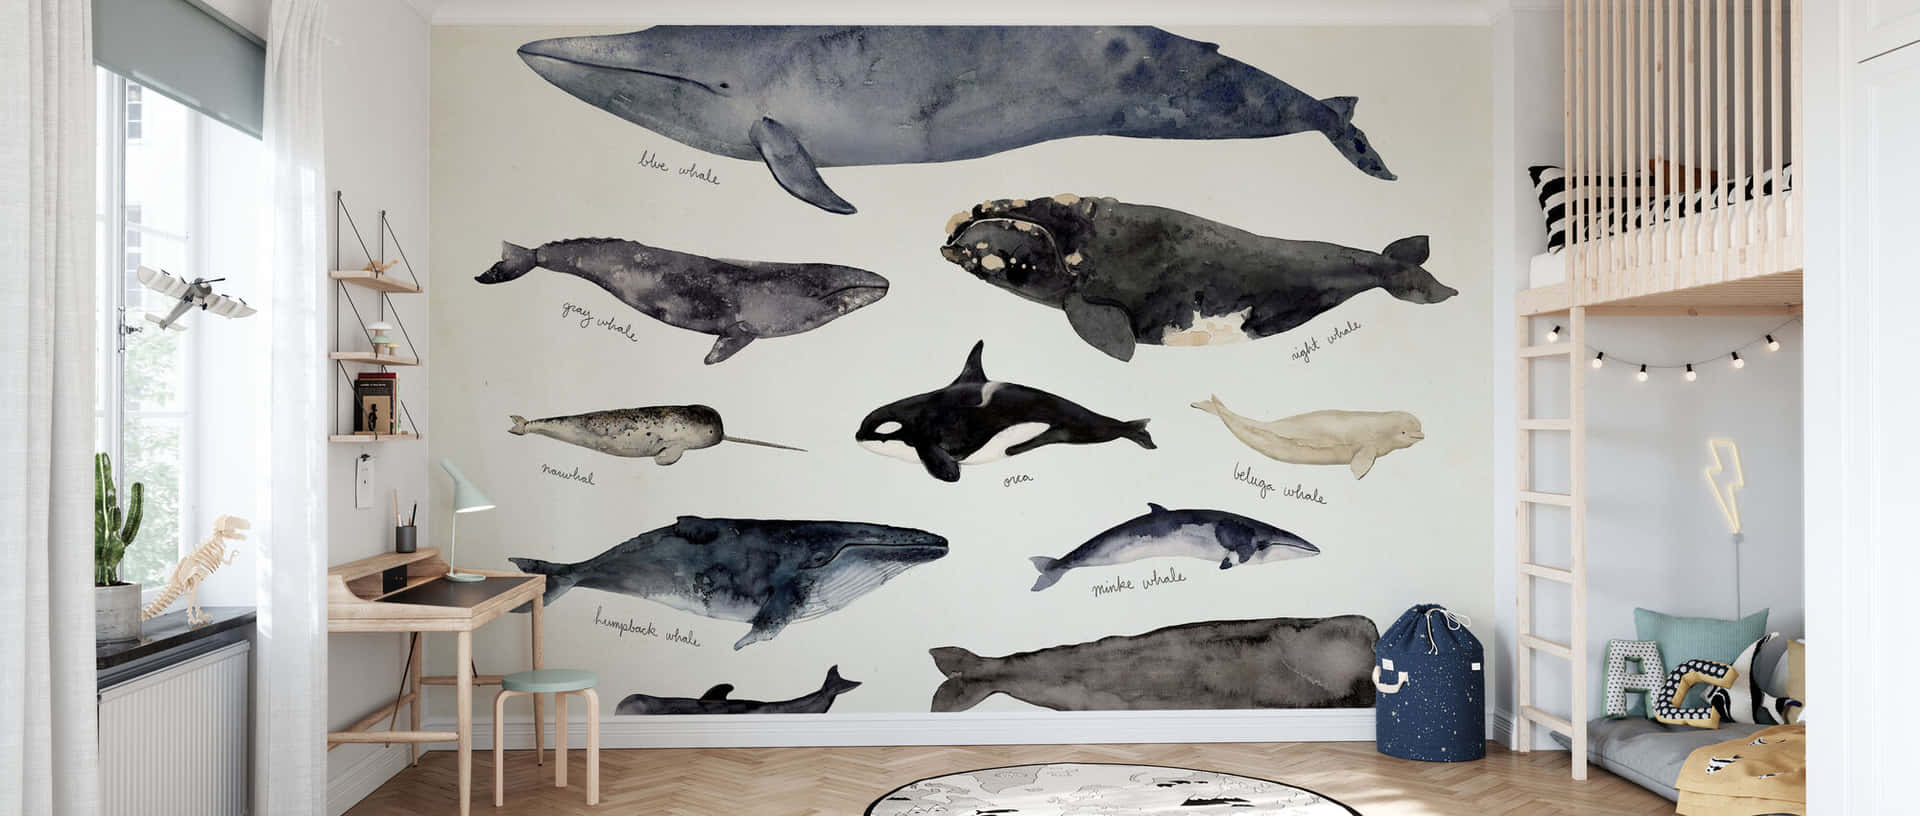 Whale Illustration Wallpaper Childrens Room Wallpaper